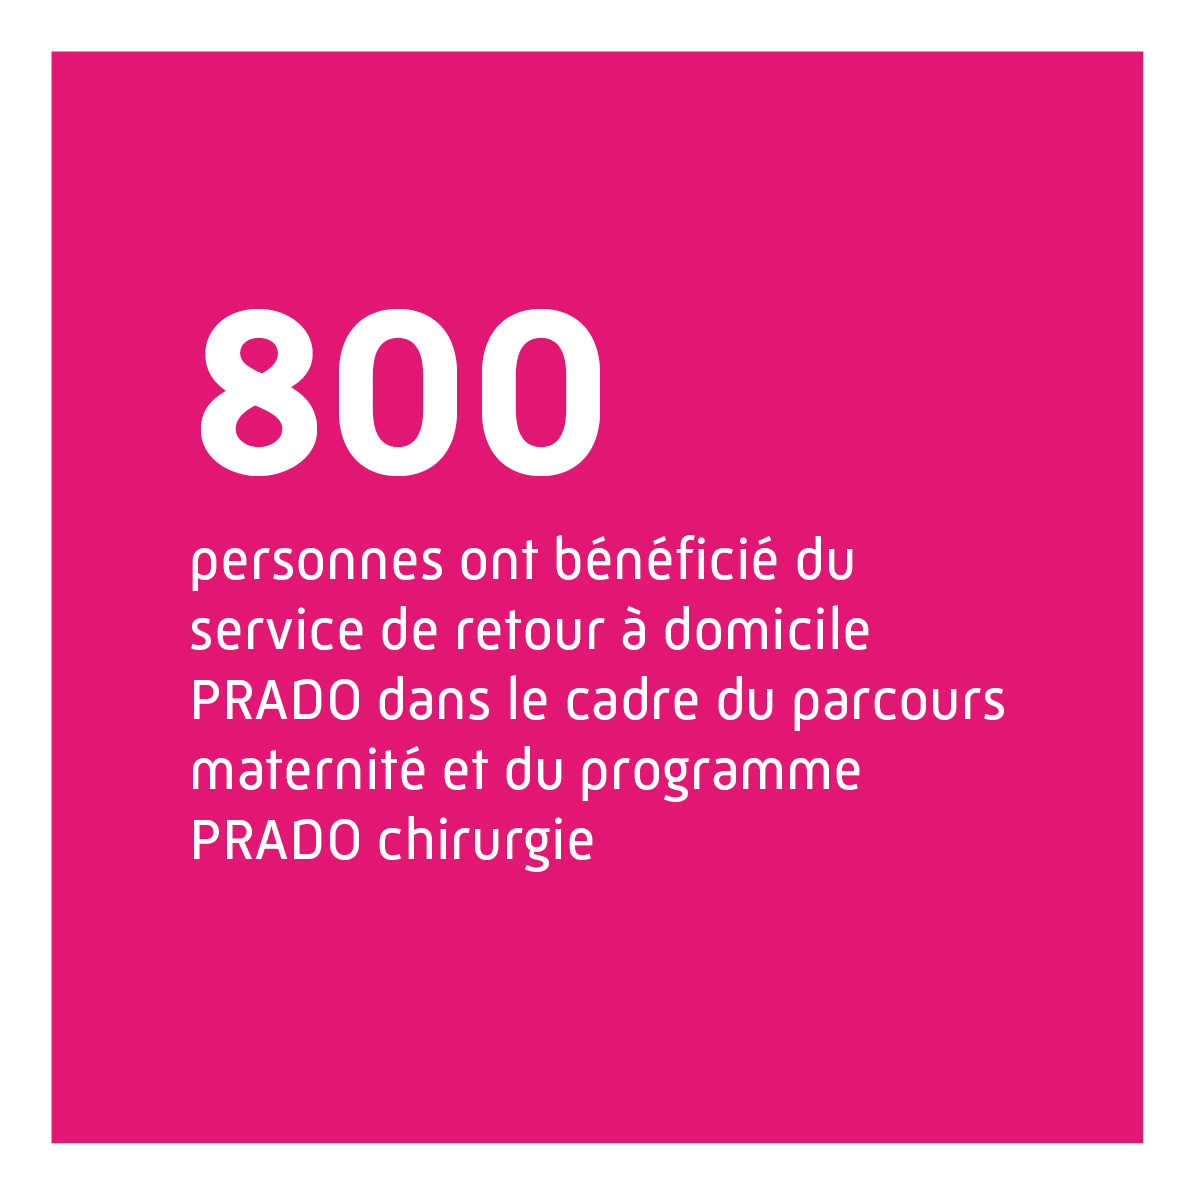 Près de 800 personnes ont bénéficié du service de retour à domicile PRADO dans le cadre du parcours maternité et du programme PRADO chirurgie.